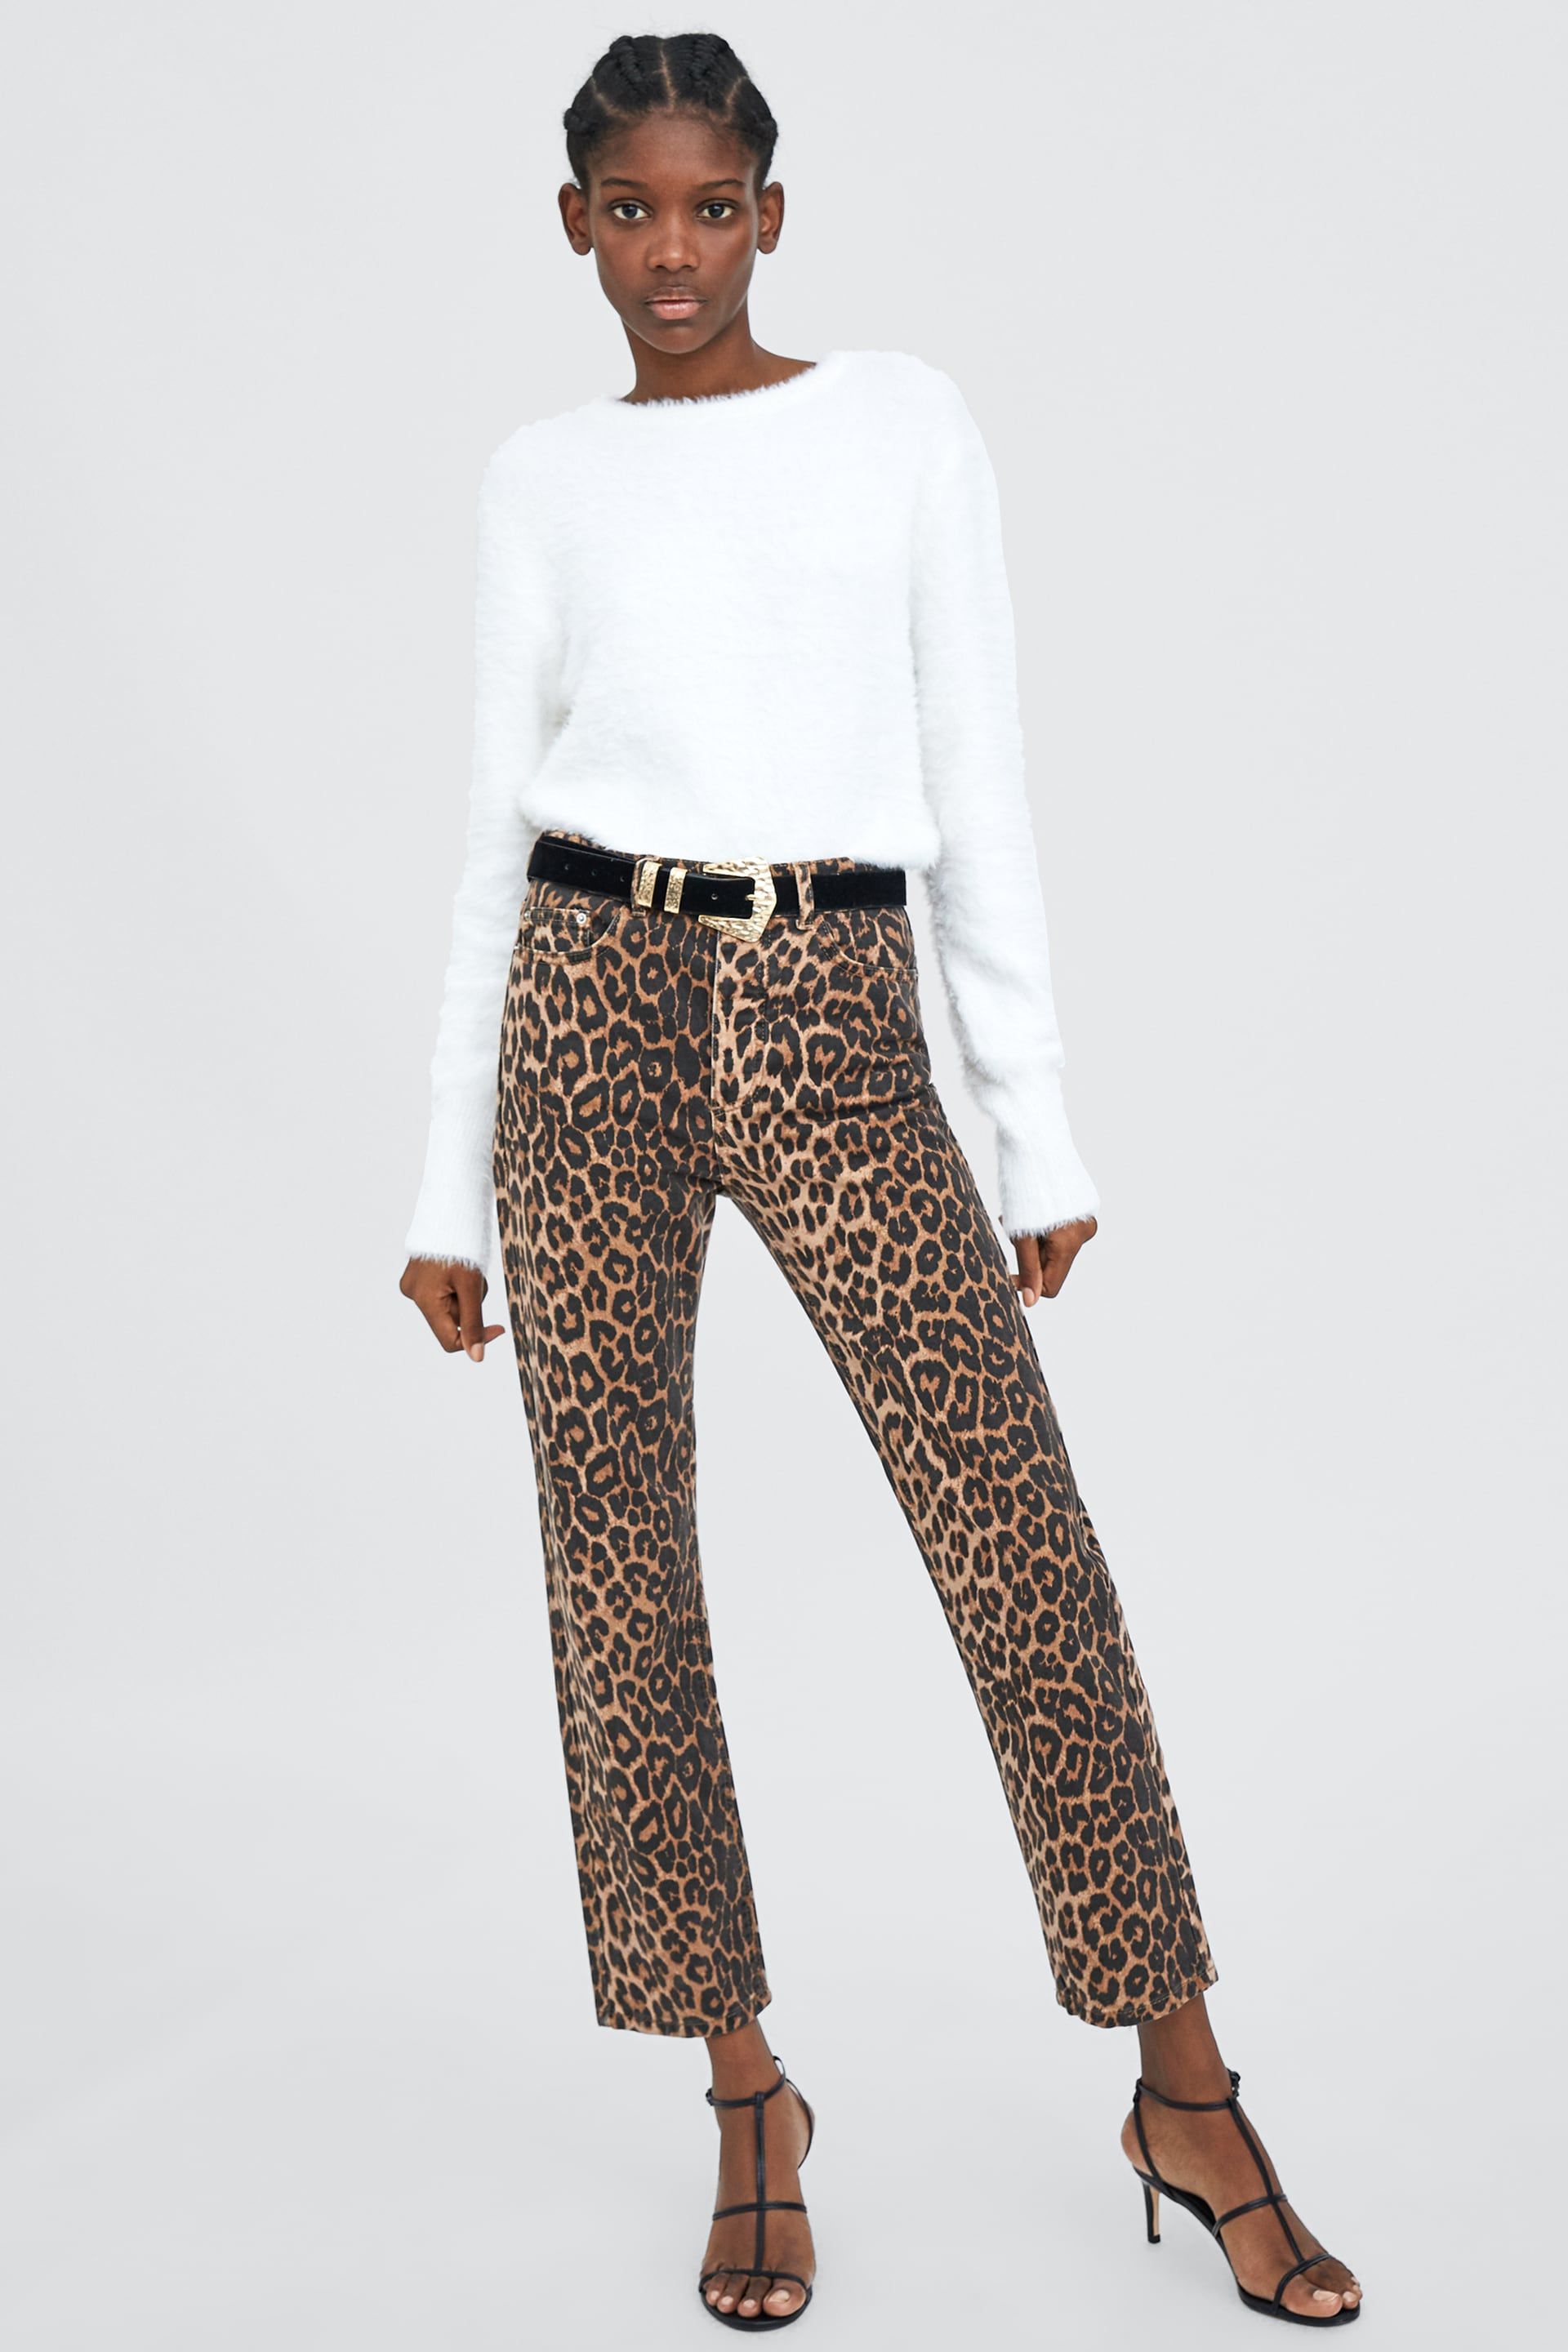 Pantalones leopardo Zara - Estos pantalones son los más vendidos